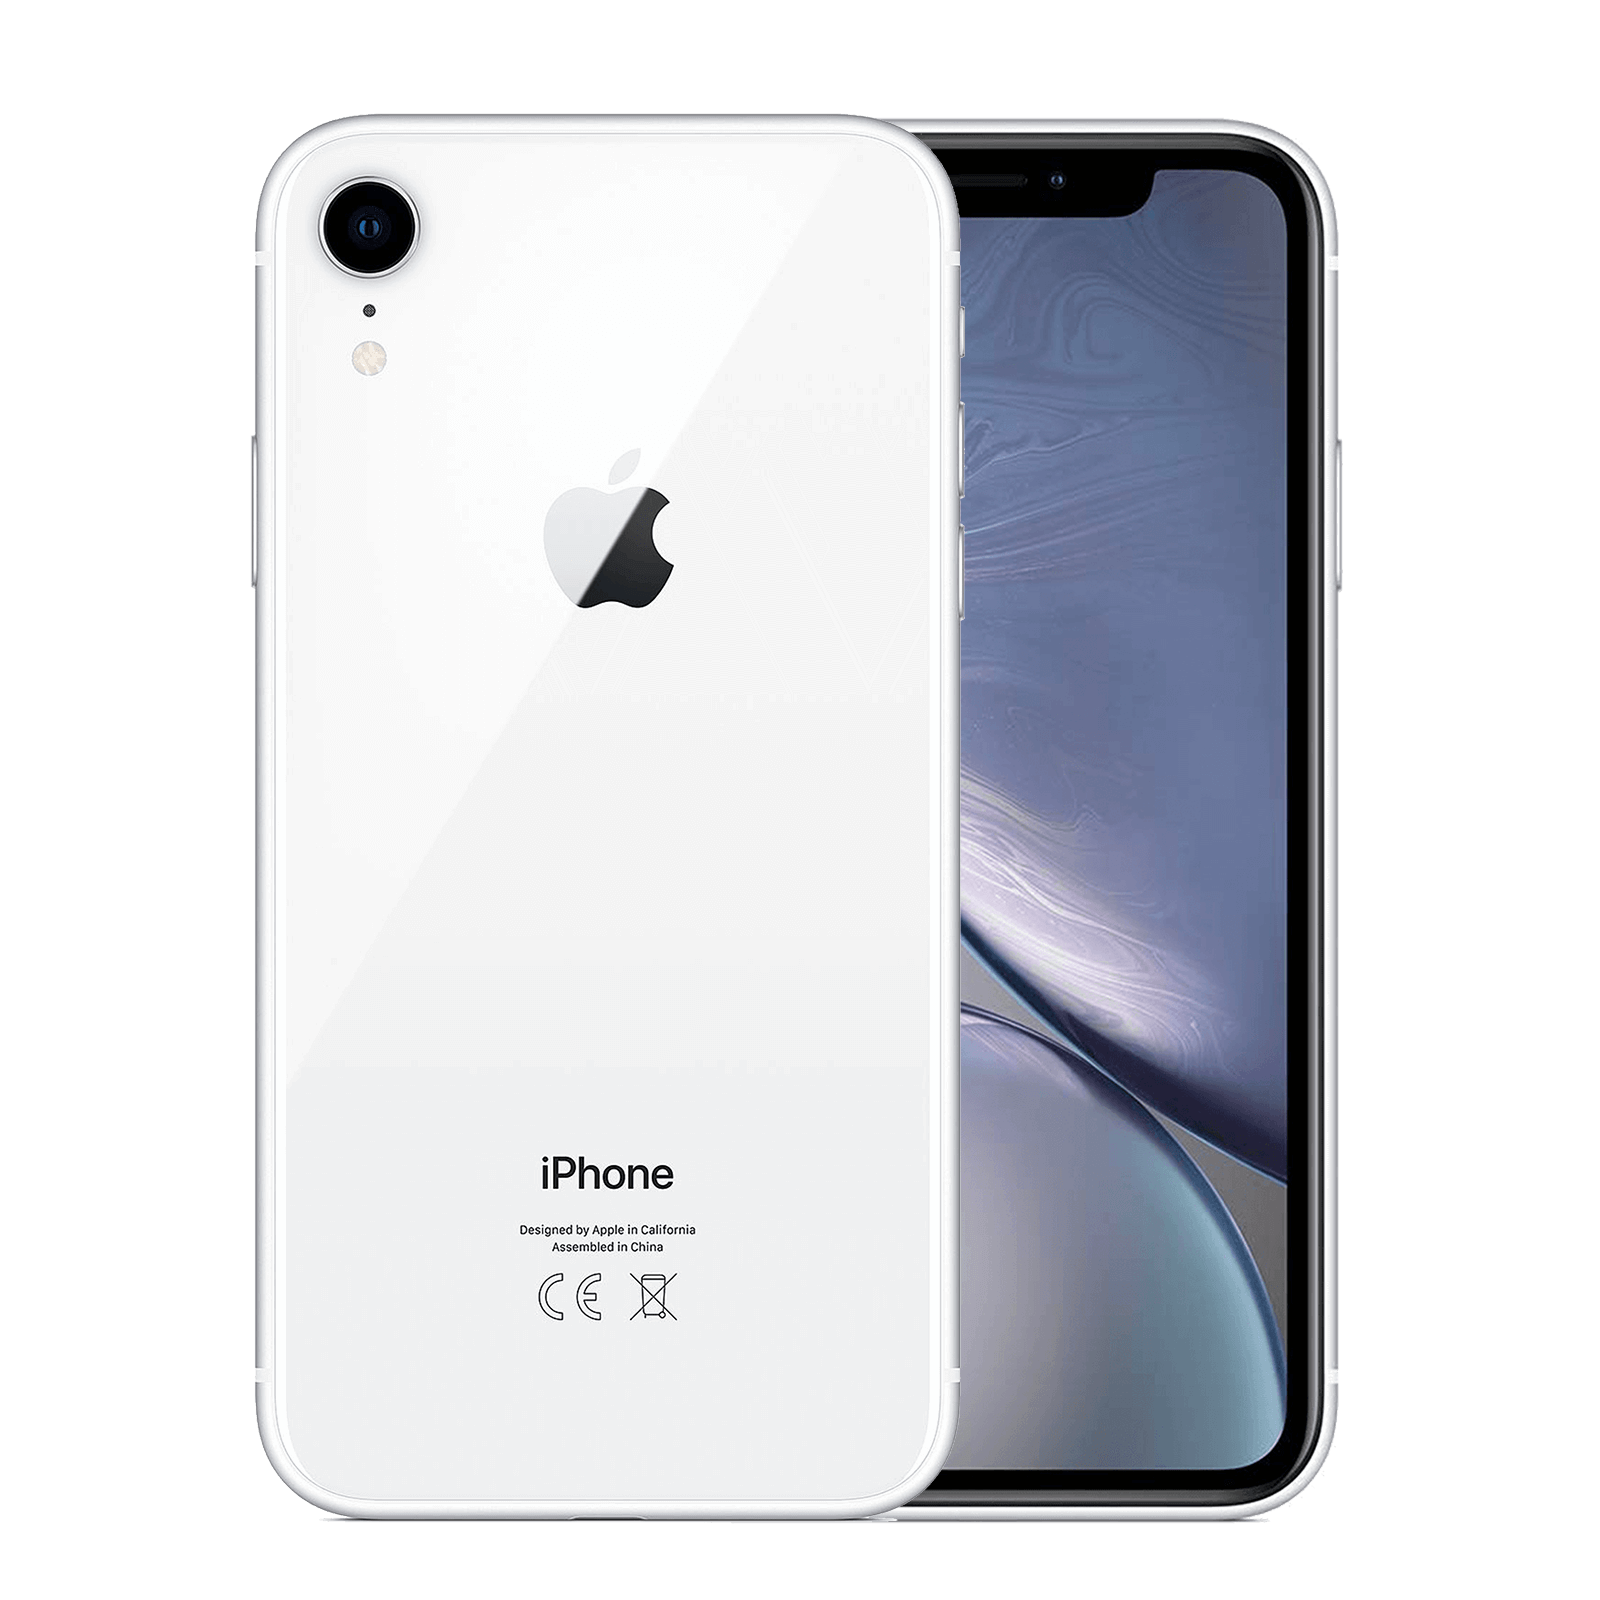 Apple iPhone XR 128GB White Fair - Verizon